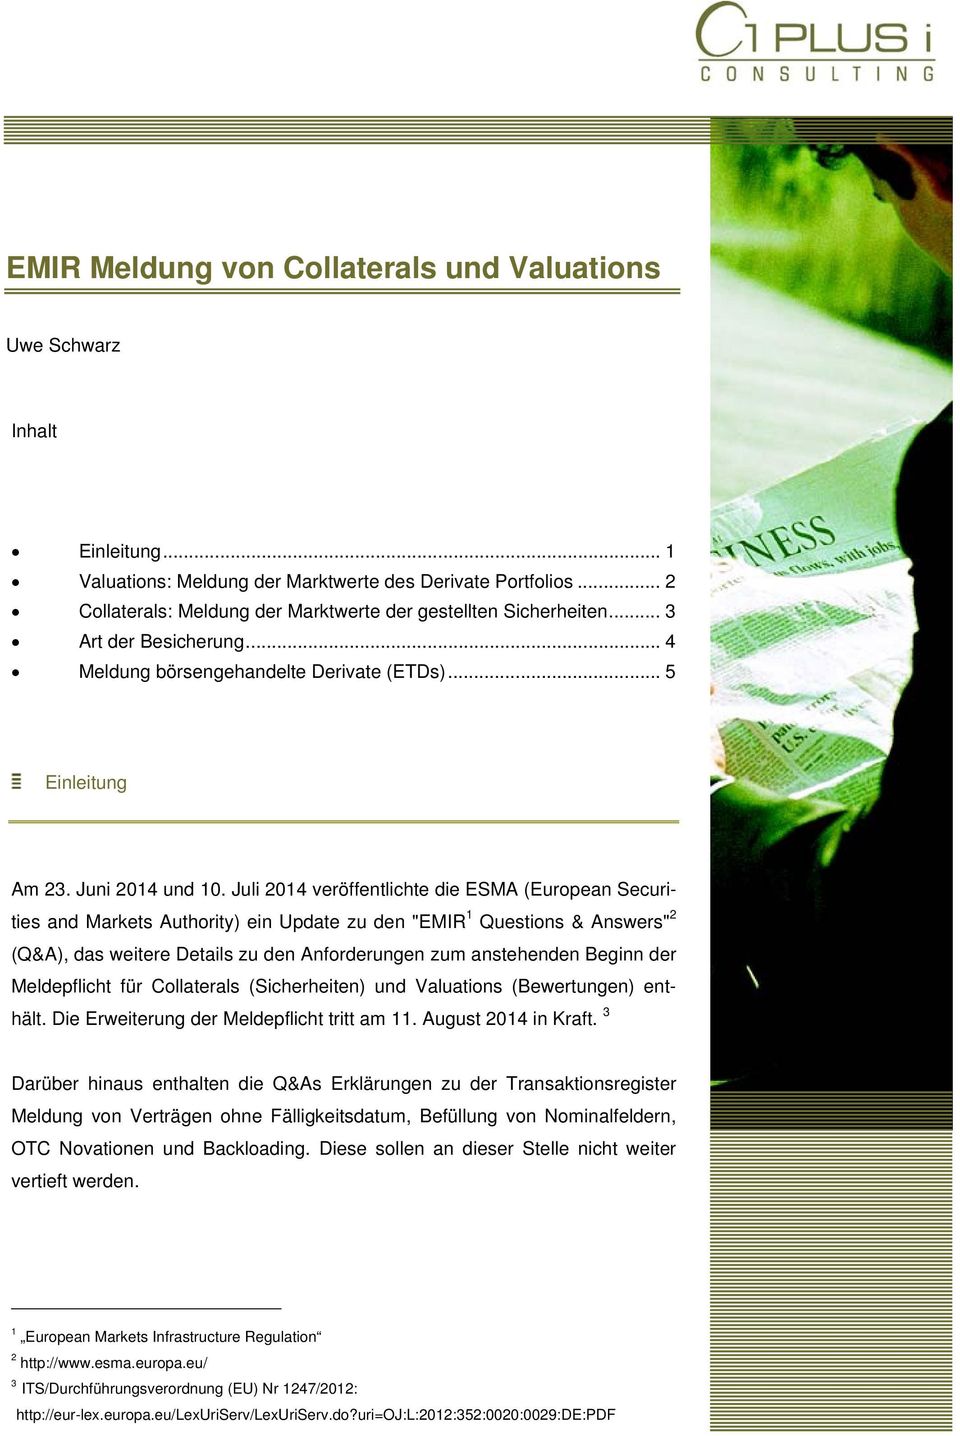 Juli 2014 veröffentlichte die ESMA (European Securities and Markets Authority) ein Update zu den "EMIR 1 Questions & Answers" 2 (Q&A), das weitere Details zu den Anforderungen zum anstehenden Beginn